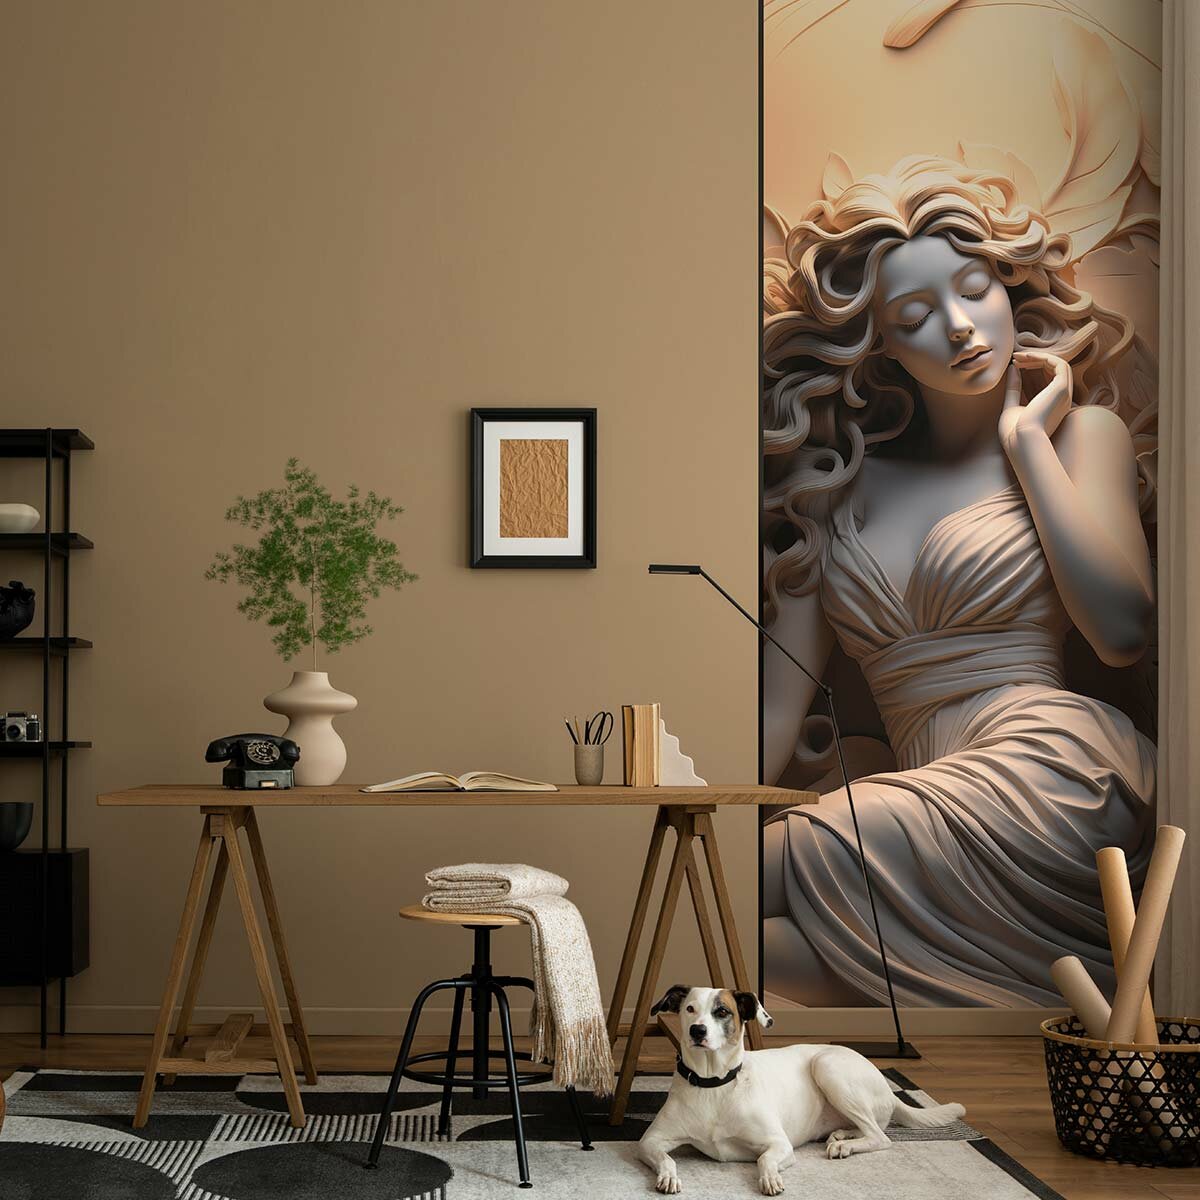 Фотообои флизелиновые с виниловым покрытием VEROL "Барельеф", 110х283 см, моющиеся обои на стену, декор для дома